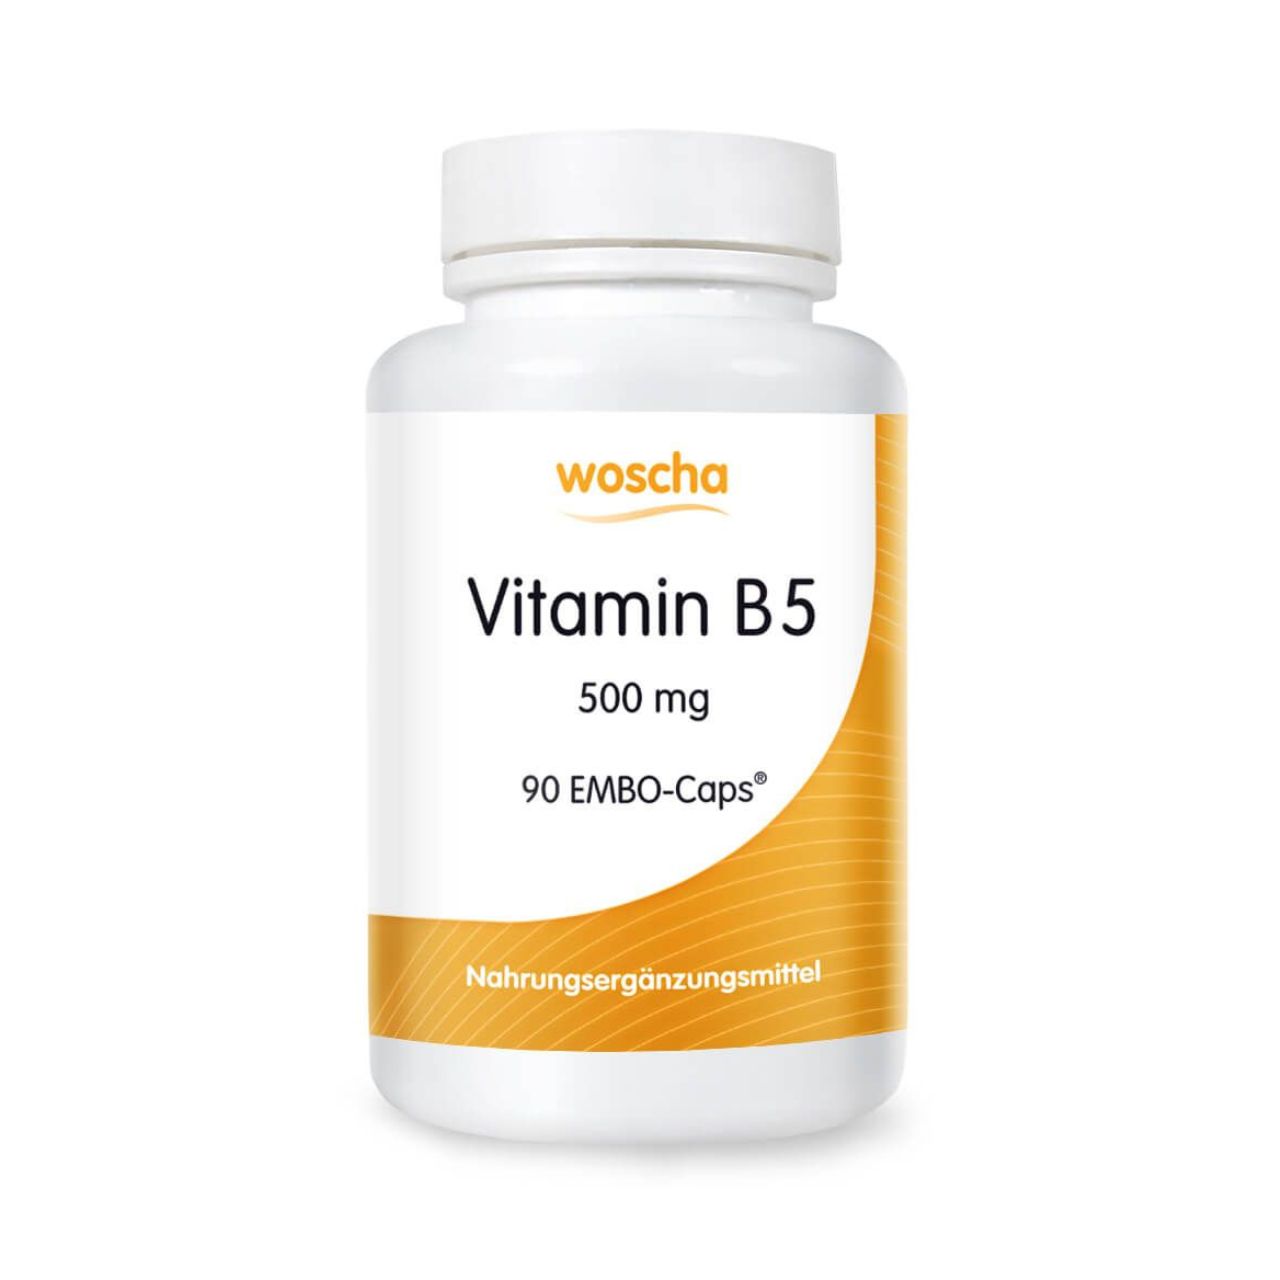 Woscha Vitamin B5 von podo medi beinhaltet 90 Kapseln